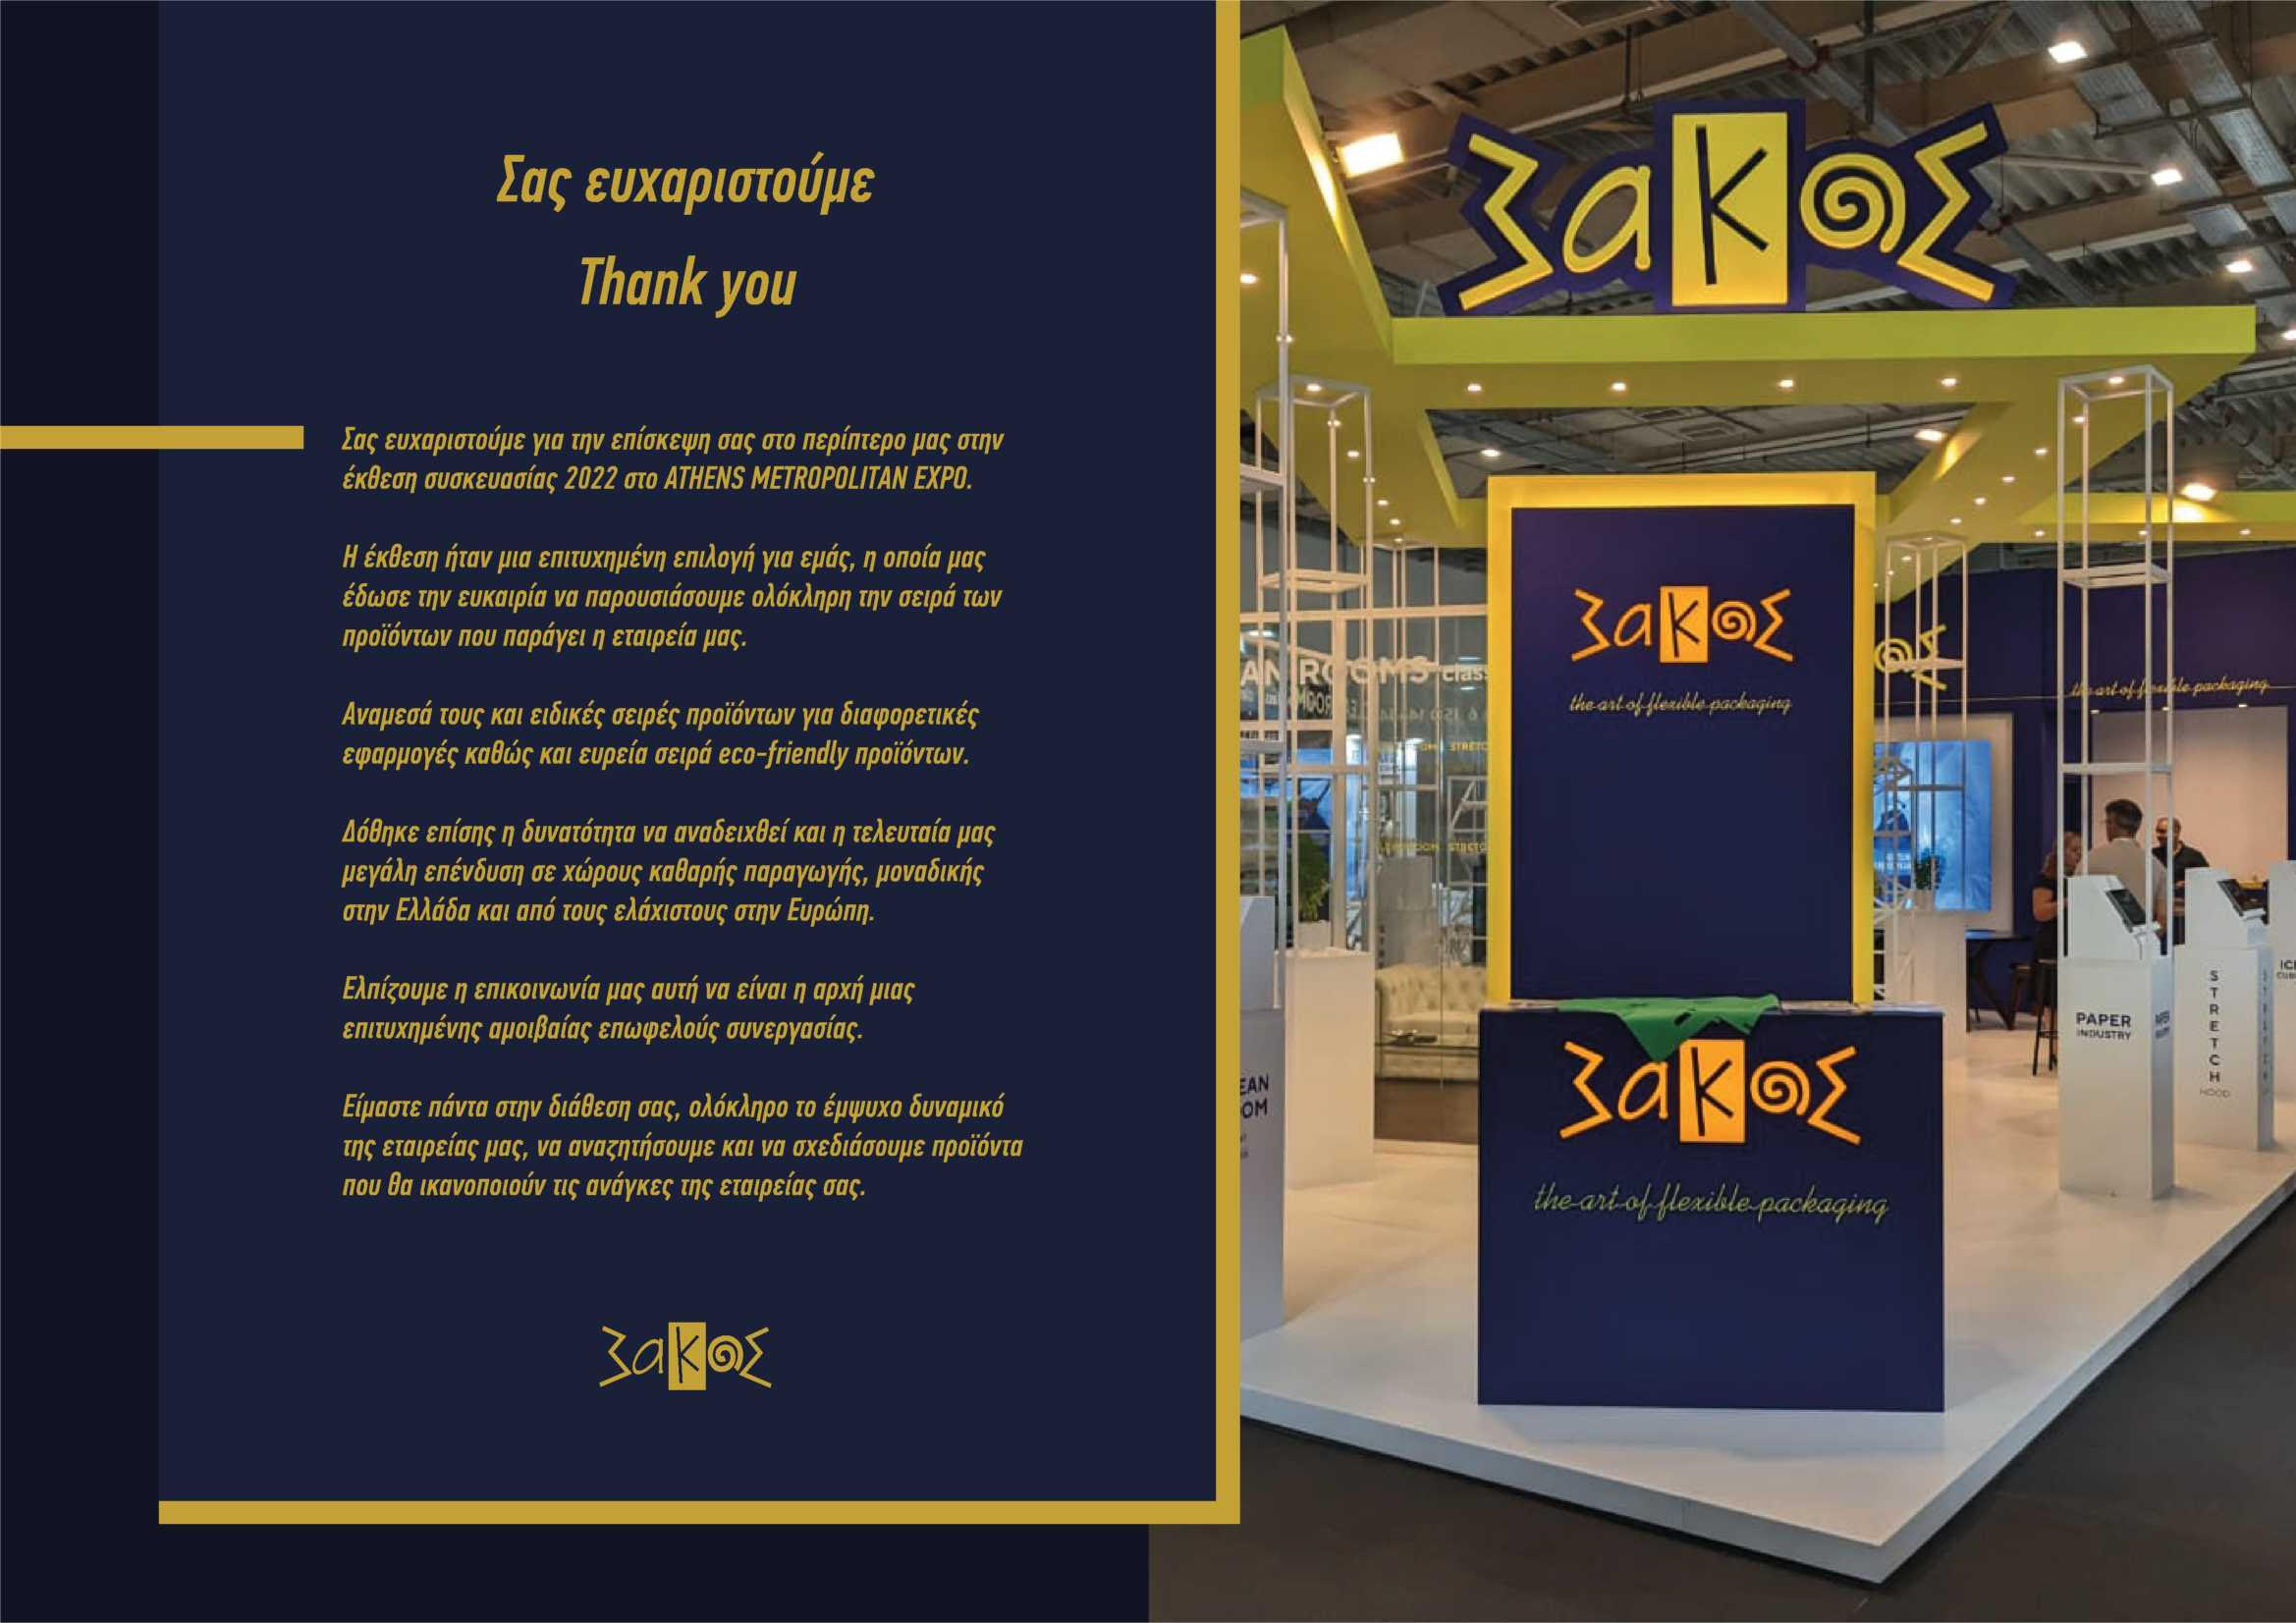 sakos exhibition syskevasia 2022card 